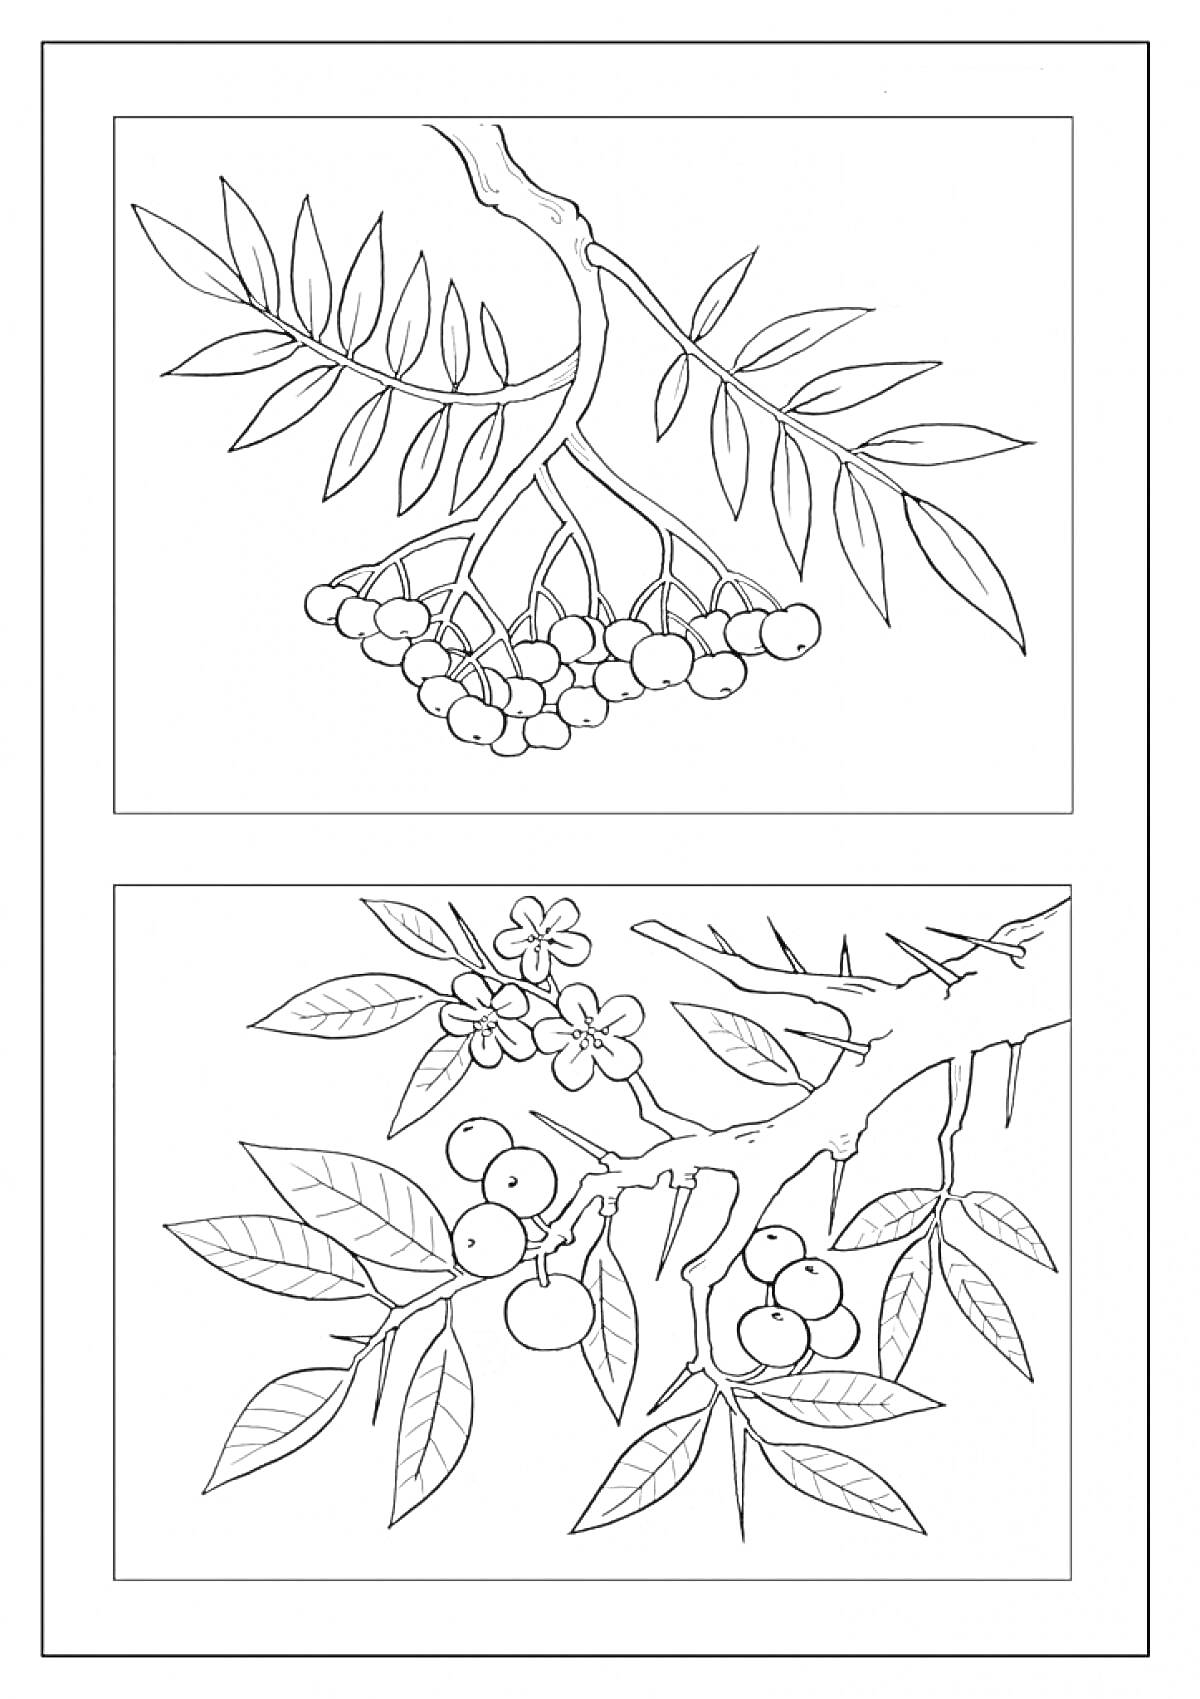 Раскраска Ветка рябины с листьями и гроздьями ягод, цветущая ветка рябины с ягодами и цветами